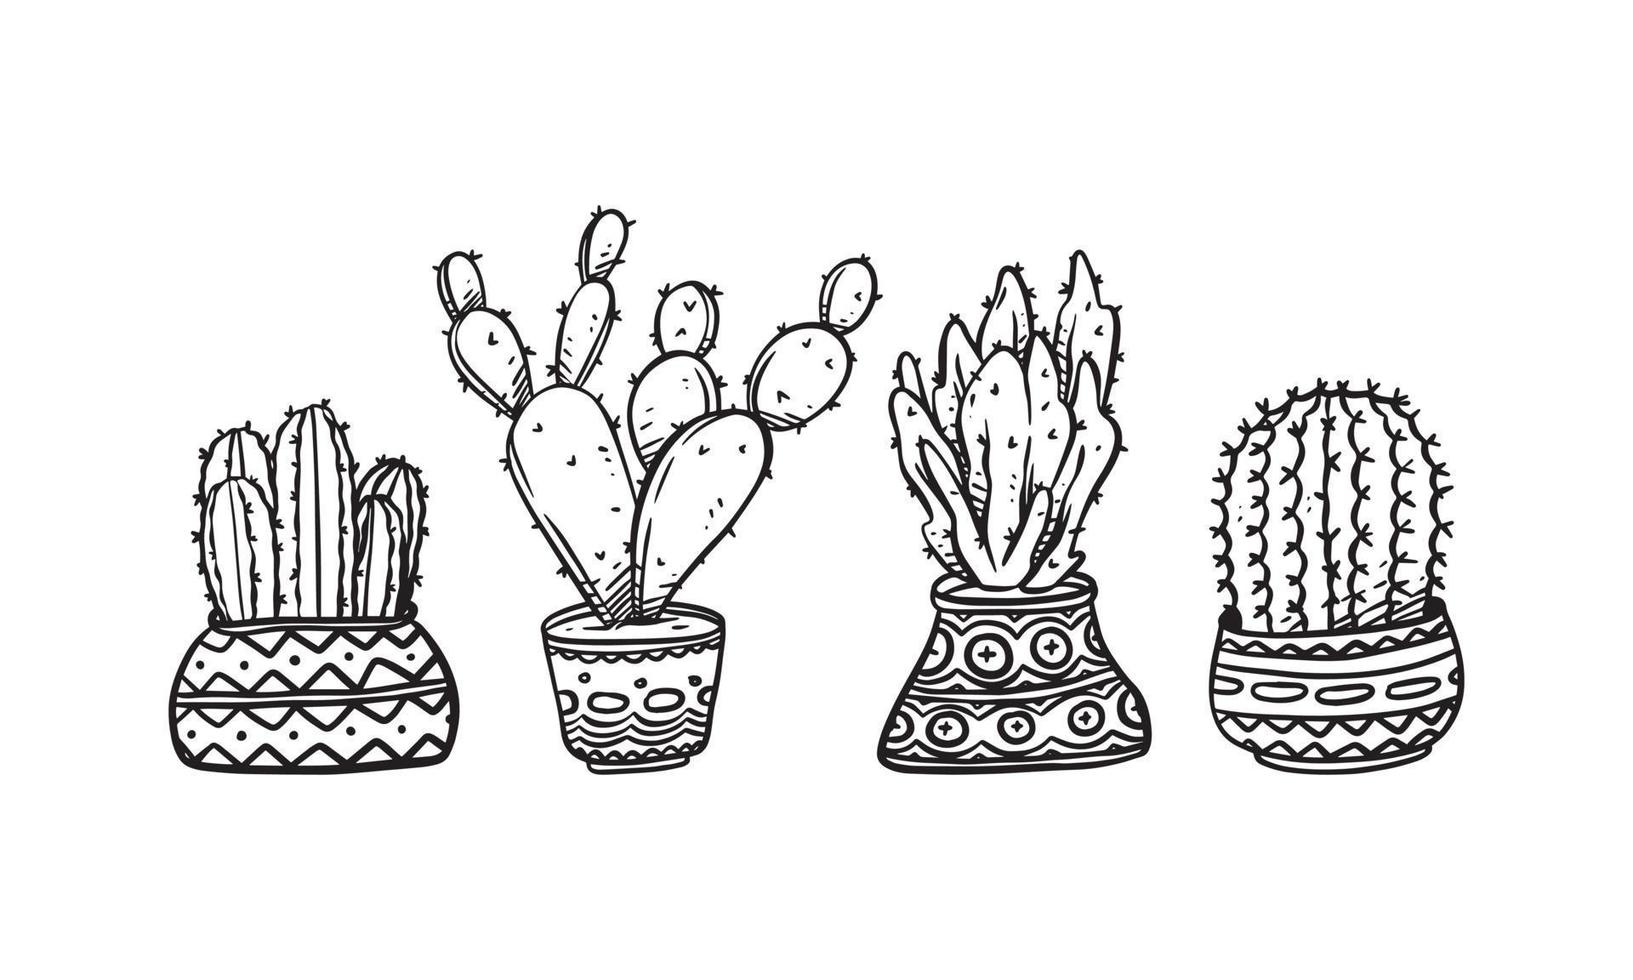 ensemble d'illustrations vectorielles dessinées à la main de plantes en pot, éléments graphiques isolés de plantes pour la conception, illustration de plantes de cactus pour créer un design romantique ou vintage vecteur